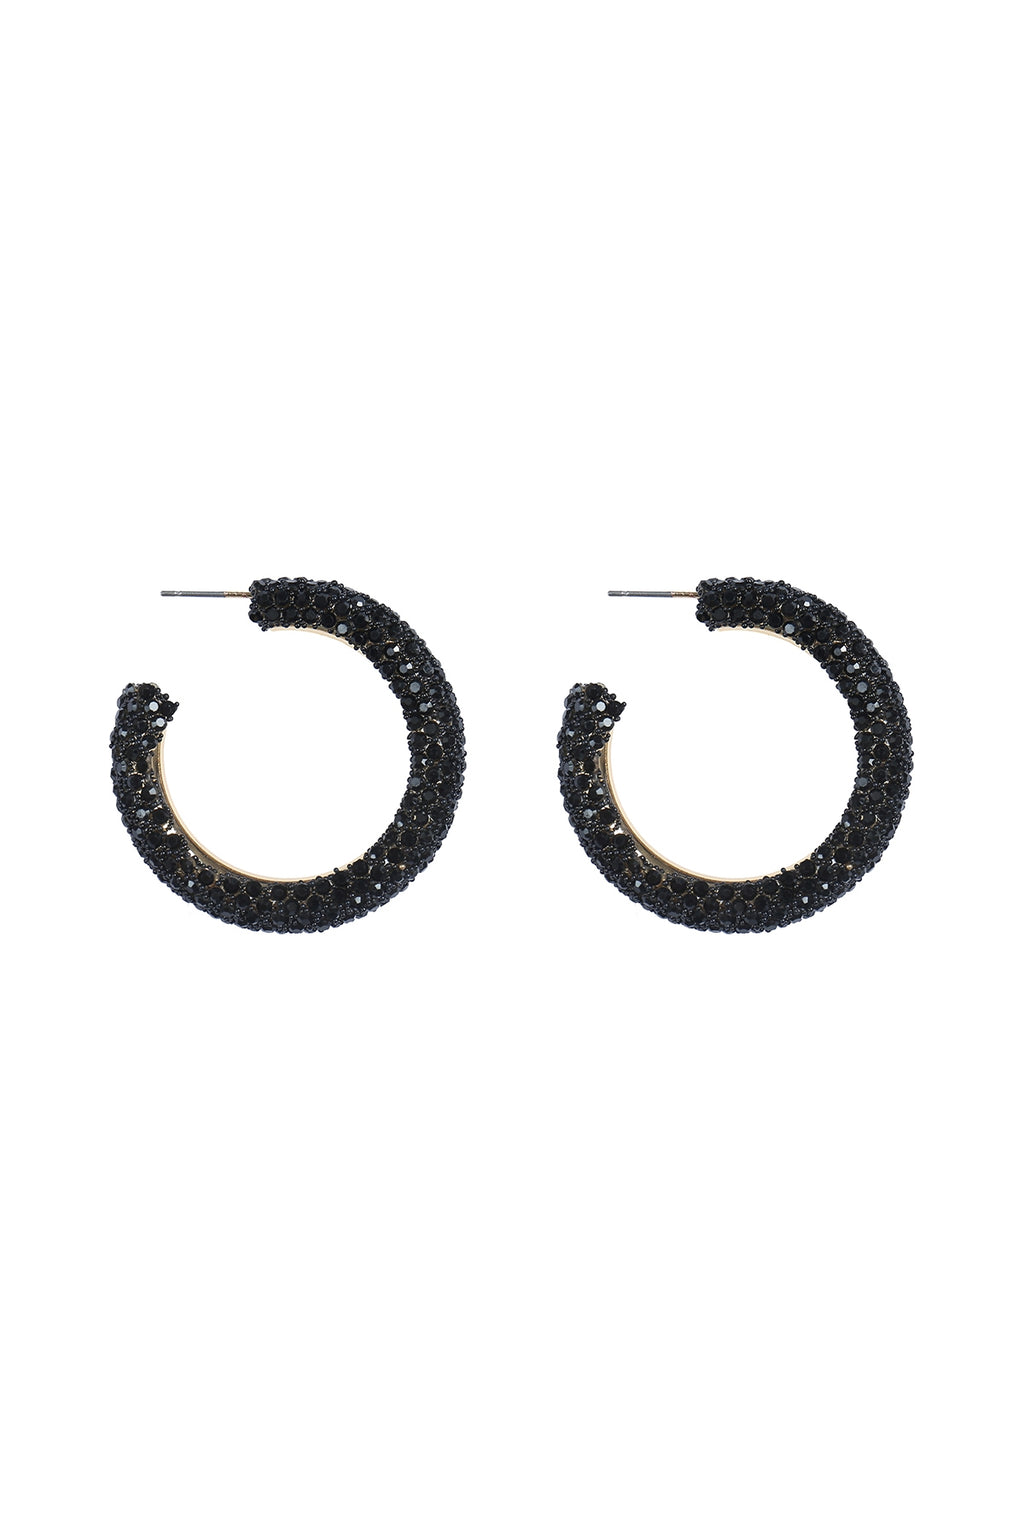 Colored Pave Rhinestone Hoop Earrings Black - Pack of 6